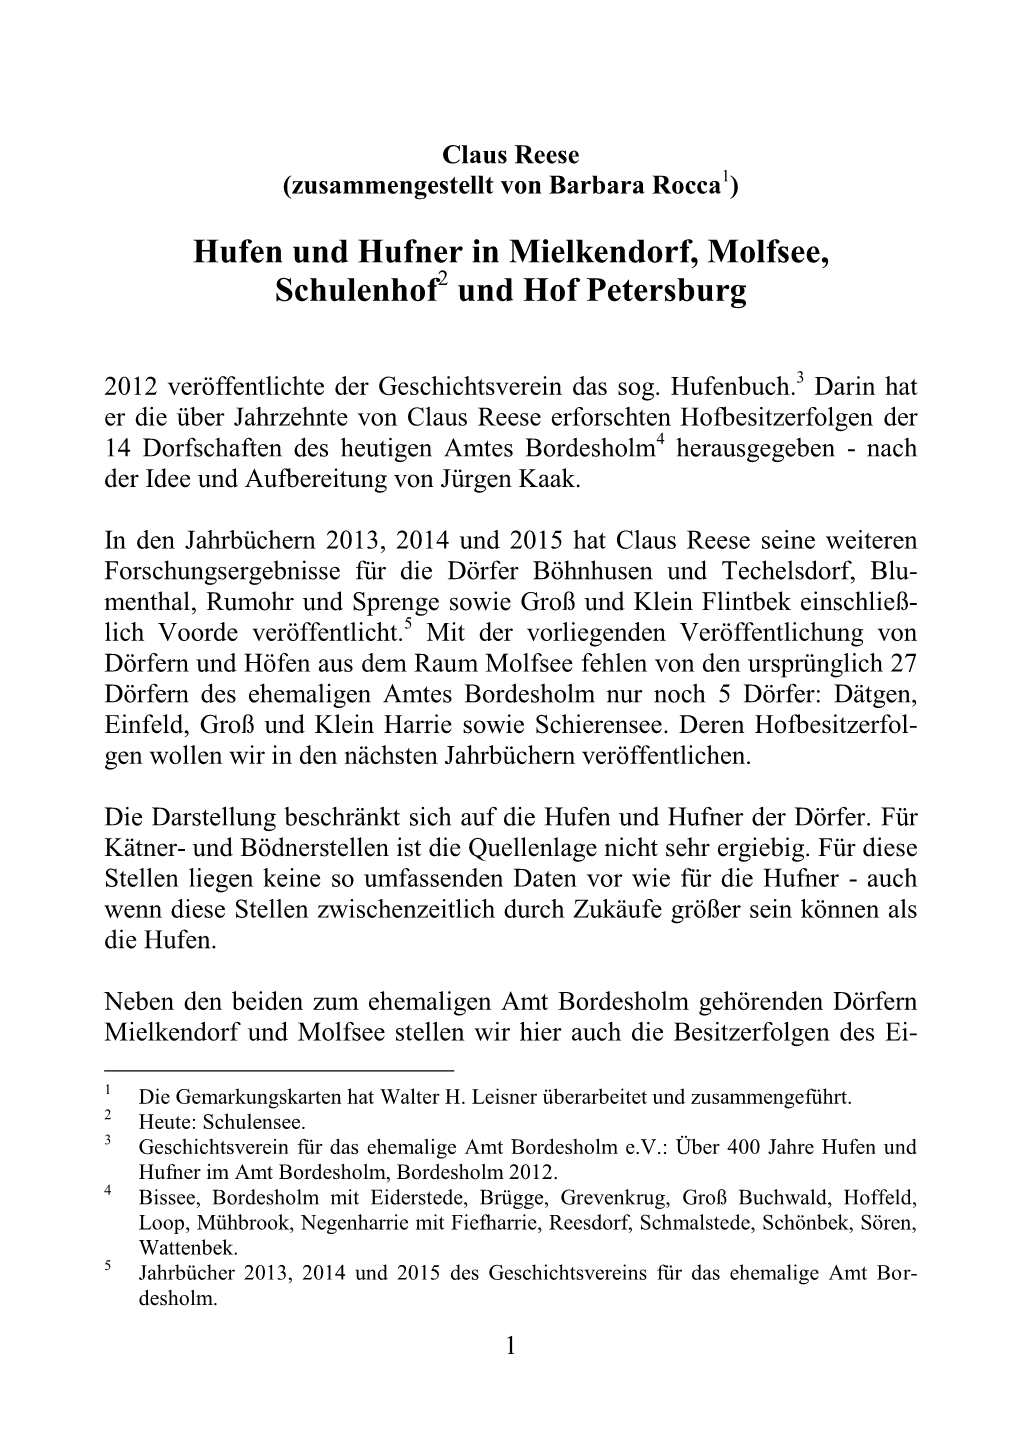 Hufen Und Hufner in Mielkendorf, Molfsee, Schulenhof Und Hof